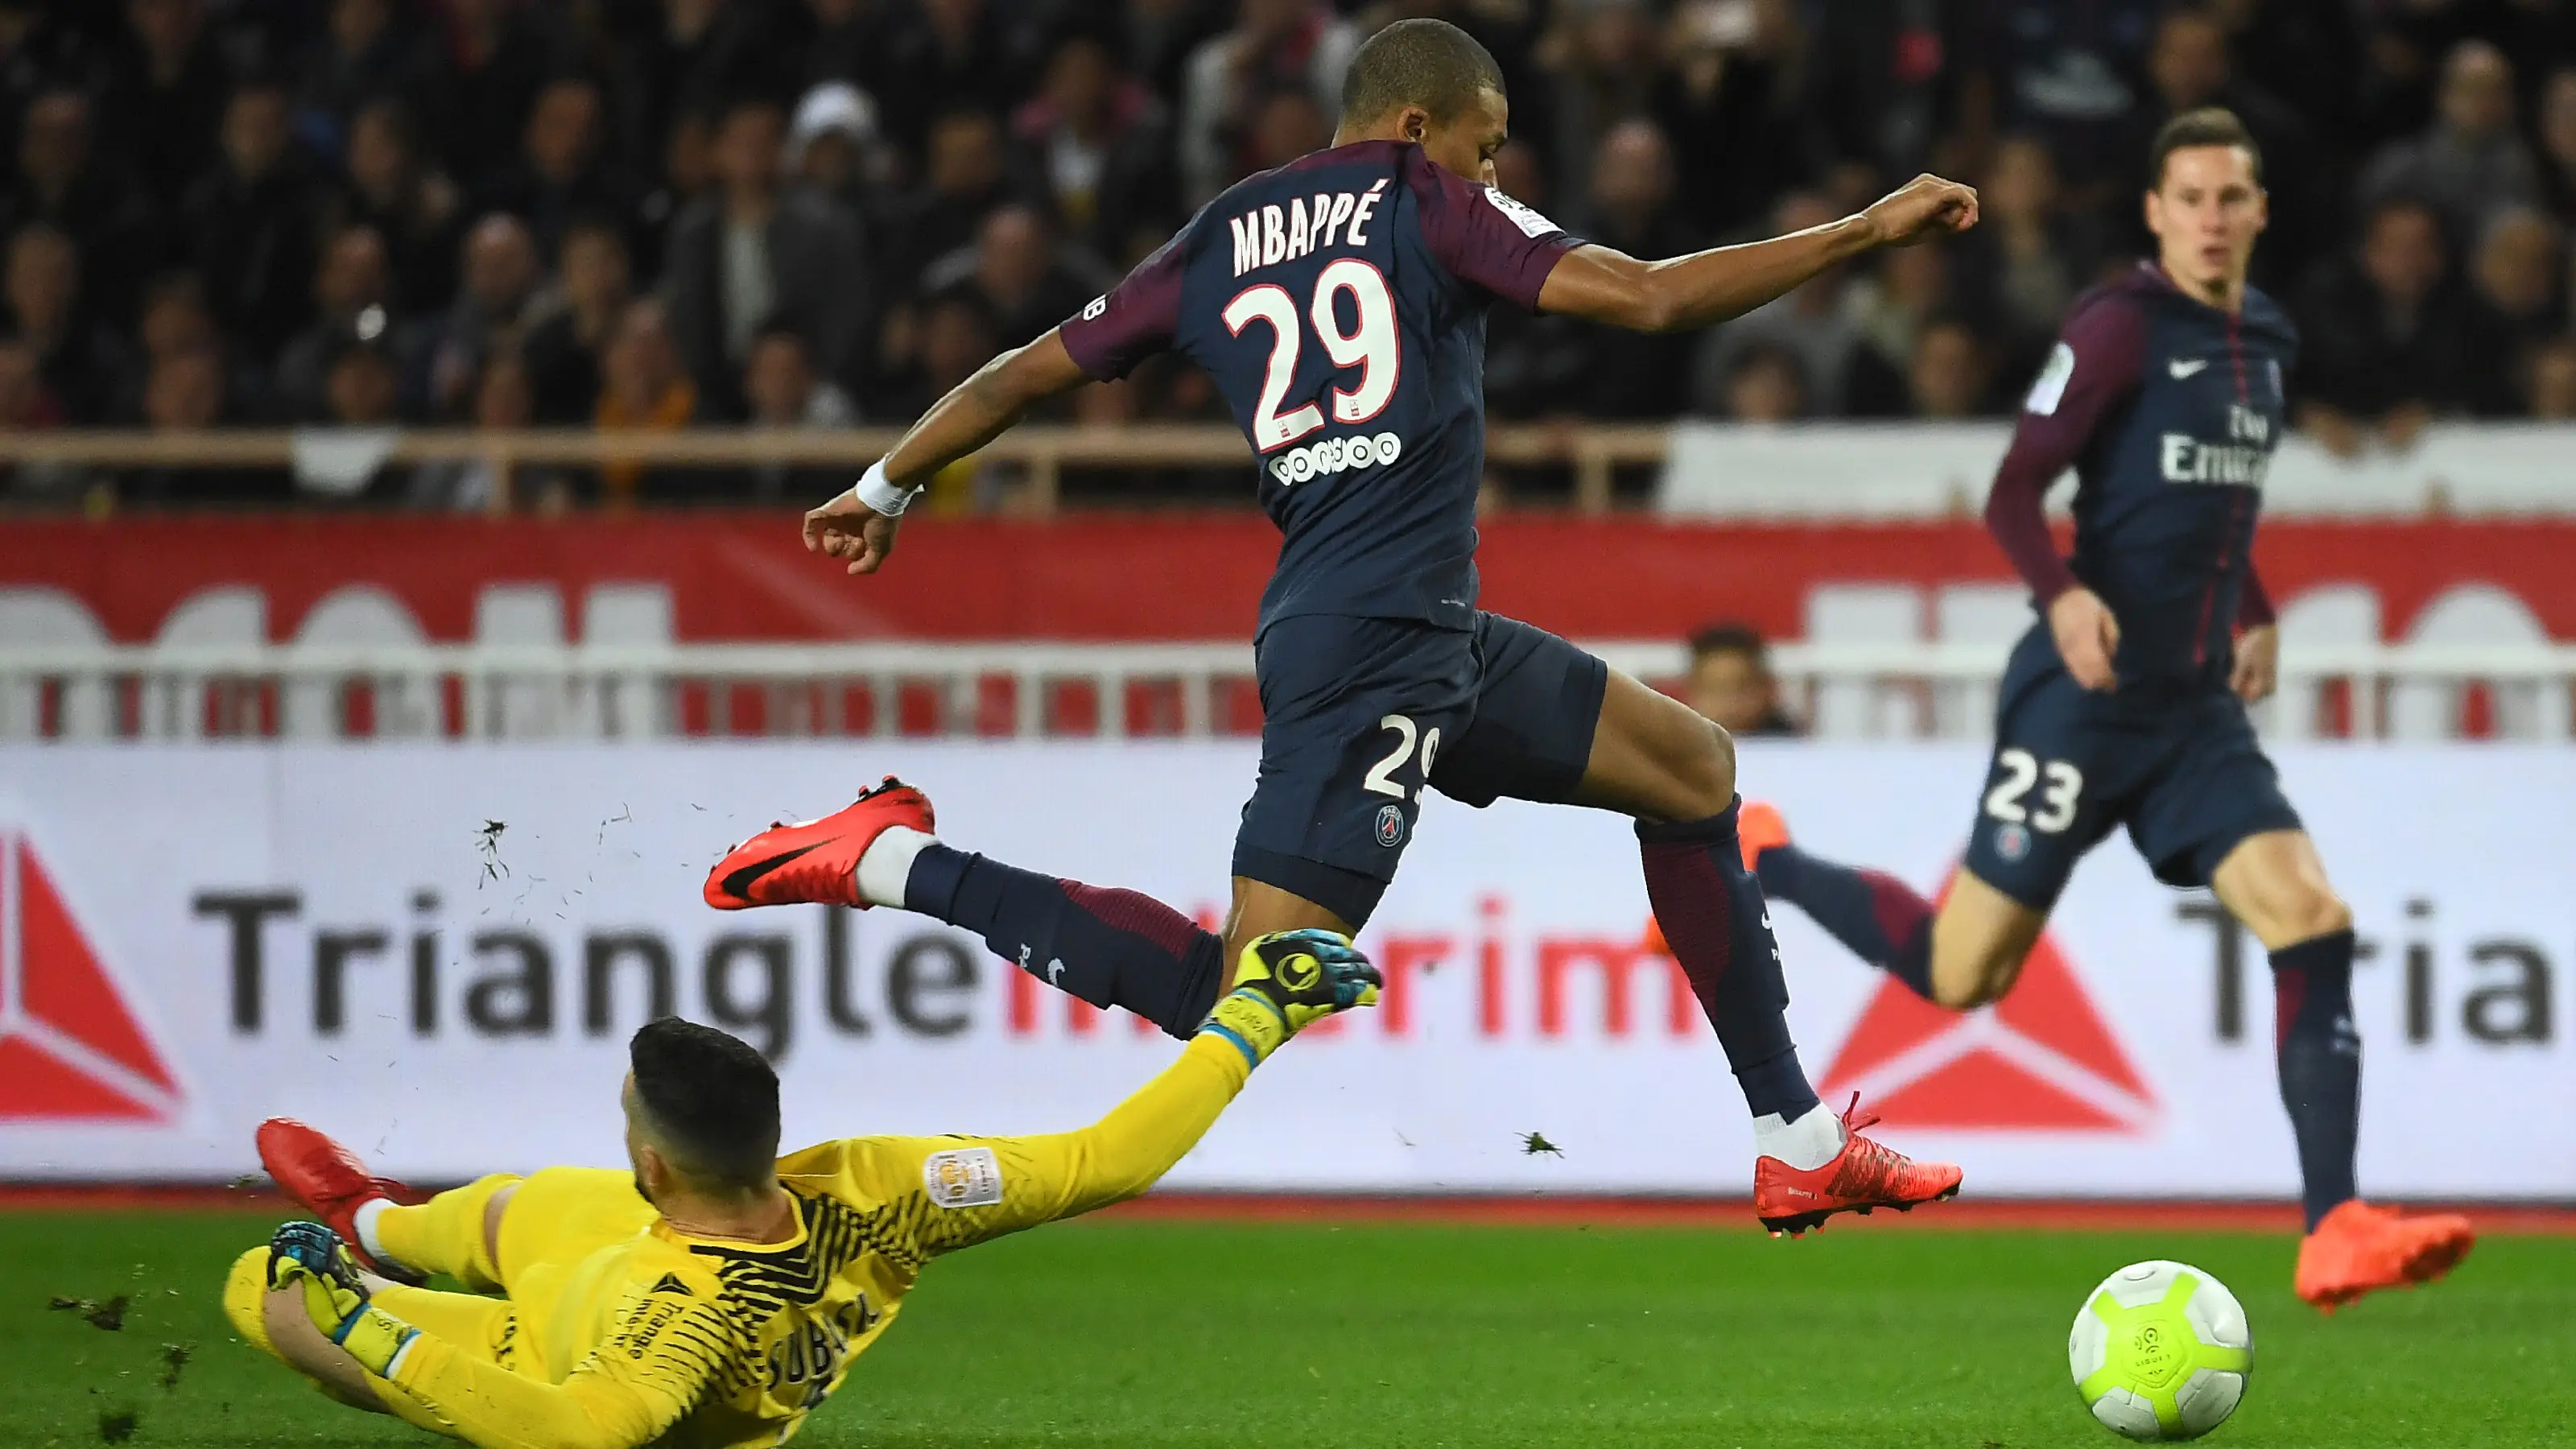 Kehadiran Mbappe membuat PSG bisa jadi kekuatan tersendiri di Liga Champions. (AFP/Anne-Christine Poujoulat)